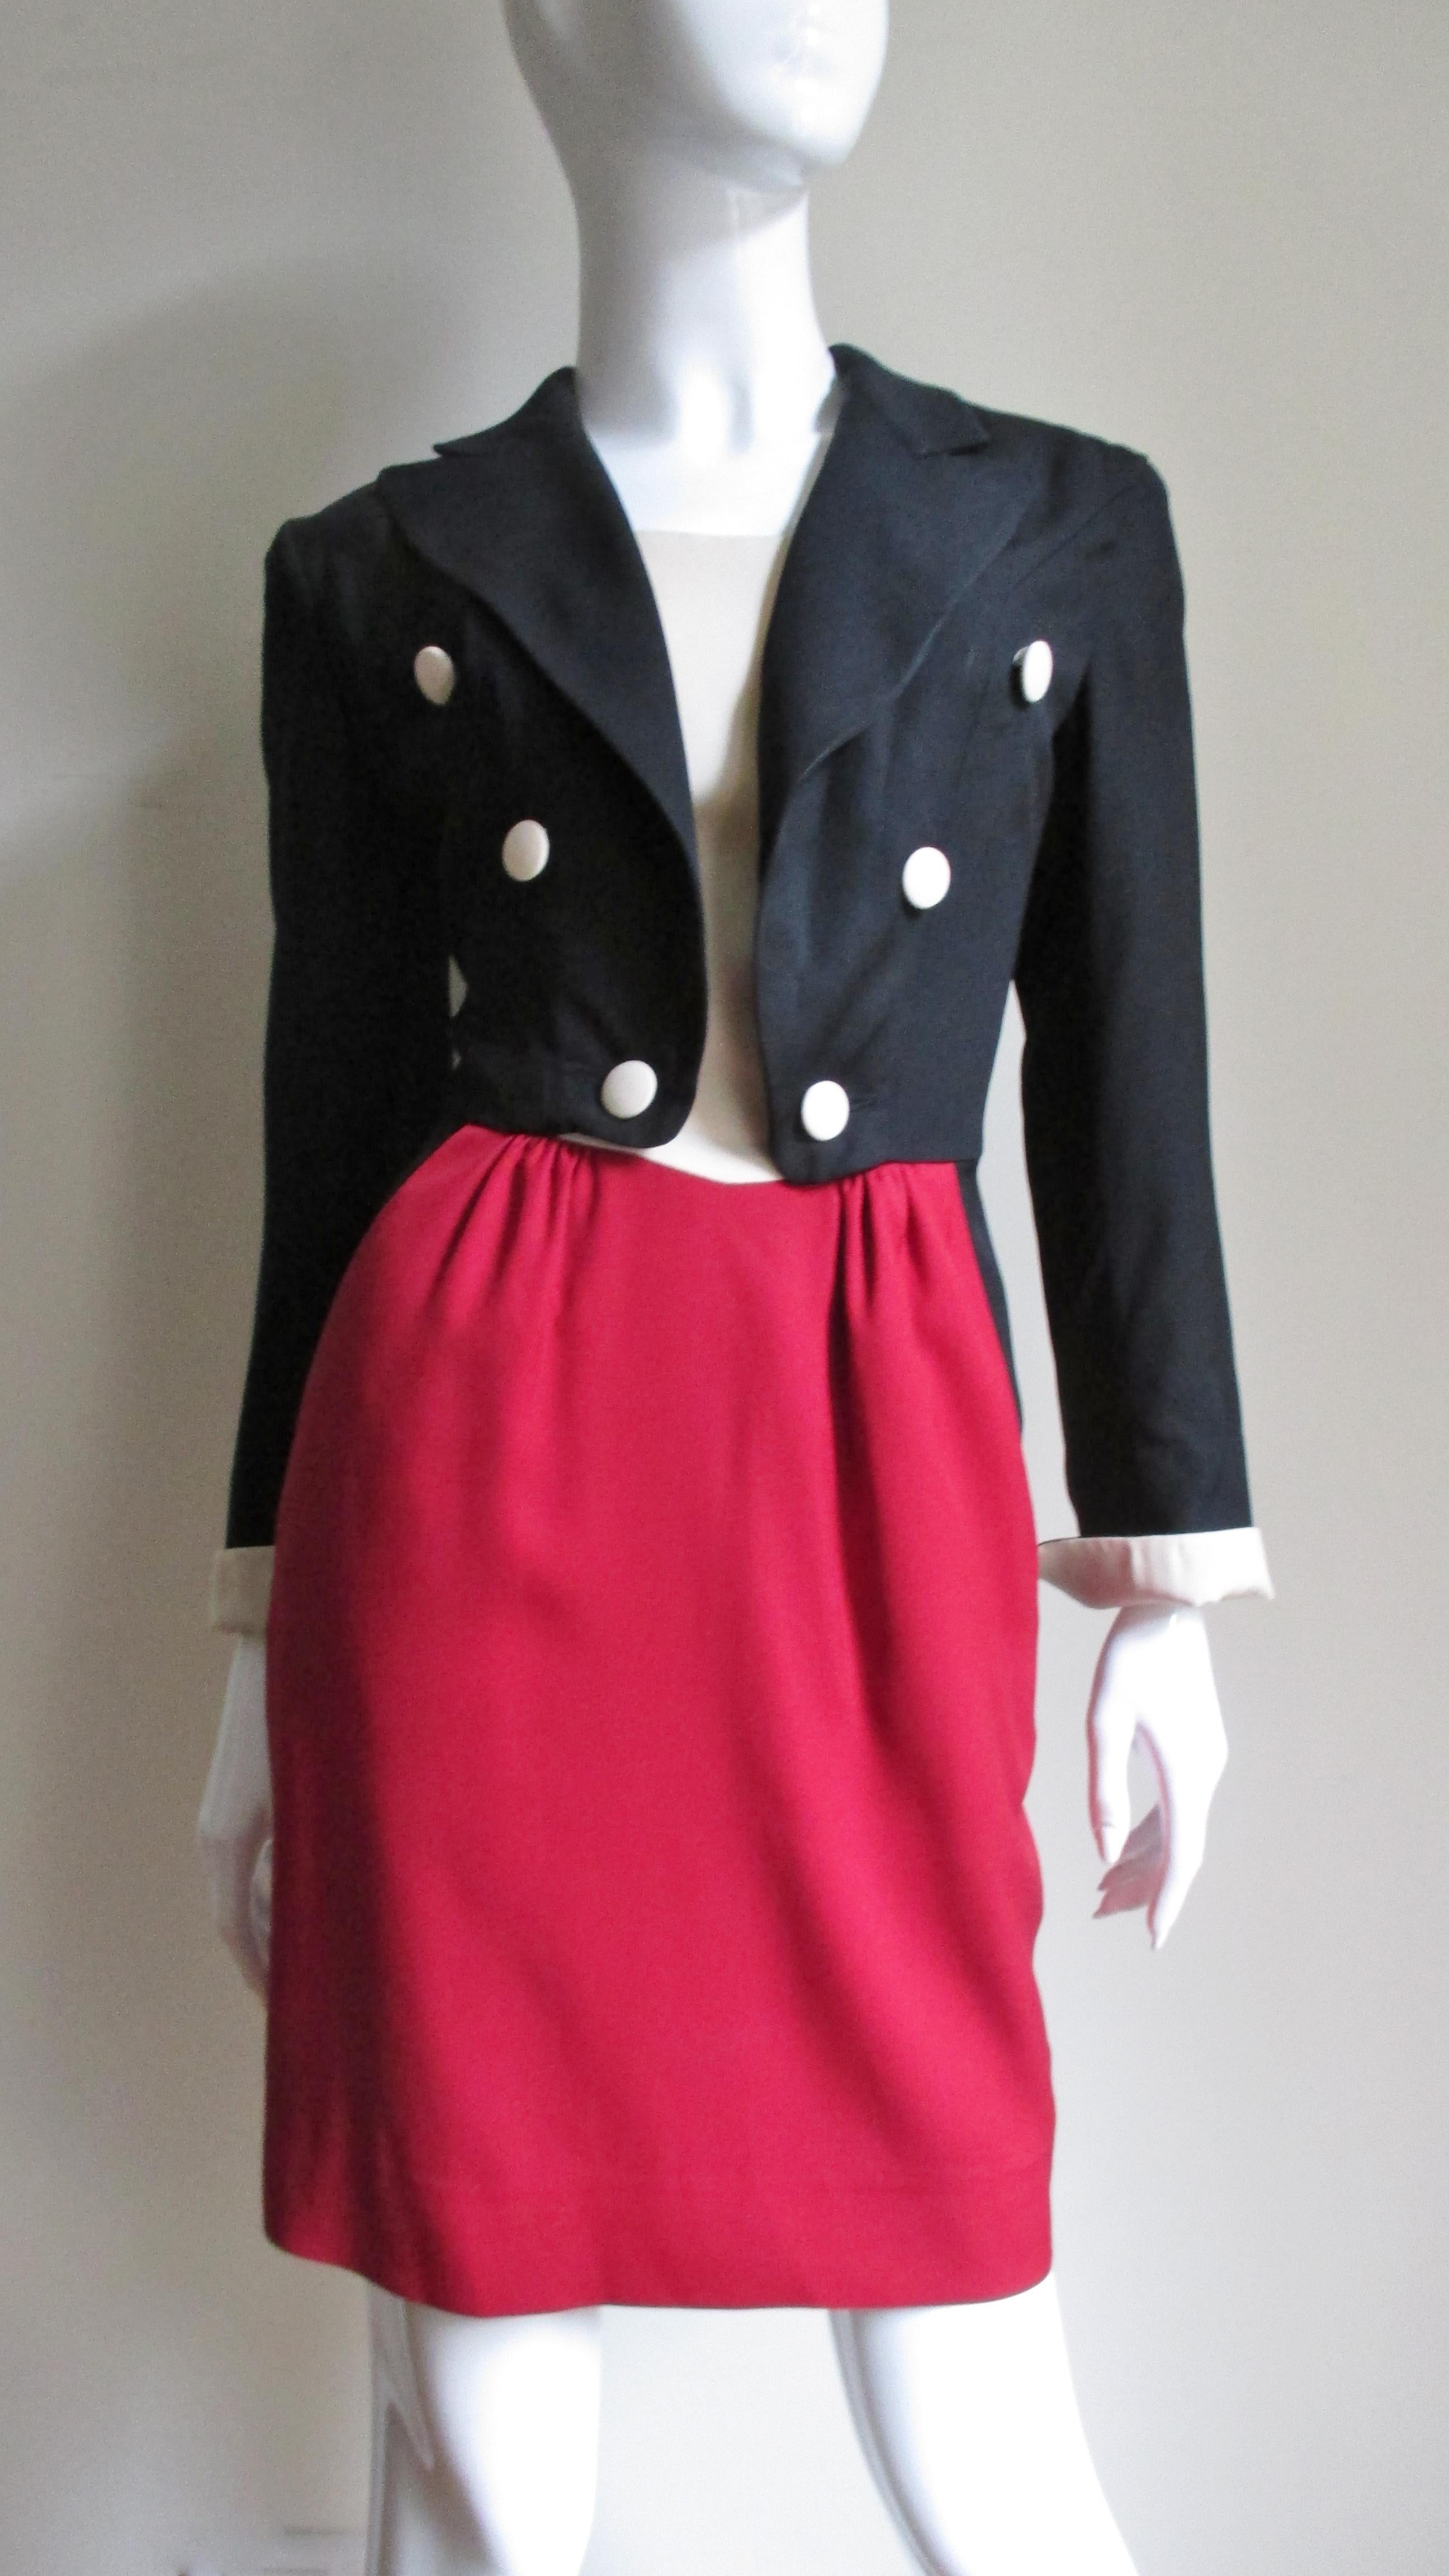 Ein skurriles Kleid von Moschino in Schwarz-Rot und Off-White. Das Oberteil ist eine schwarze zweireihige Jacke mit Spitzrevers und langen Ärmeln mit umgeschlagenen Manschetten, die zum weißen Oberteil passen, das sich von der Vorderseite der Jacke